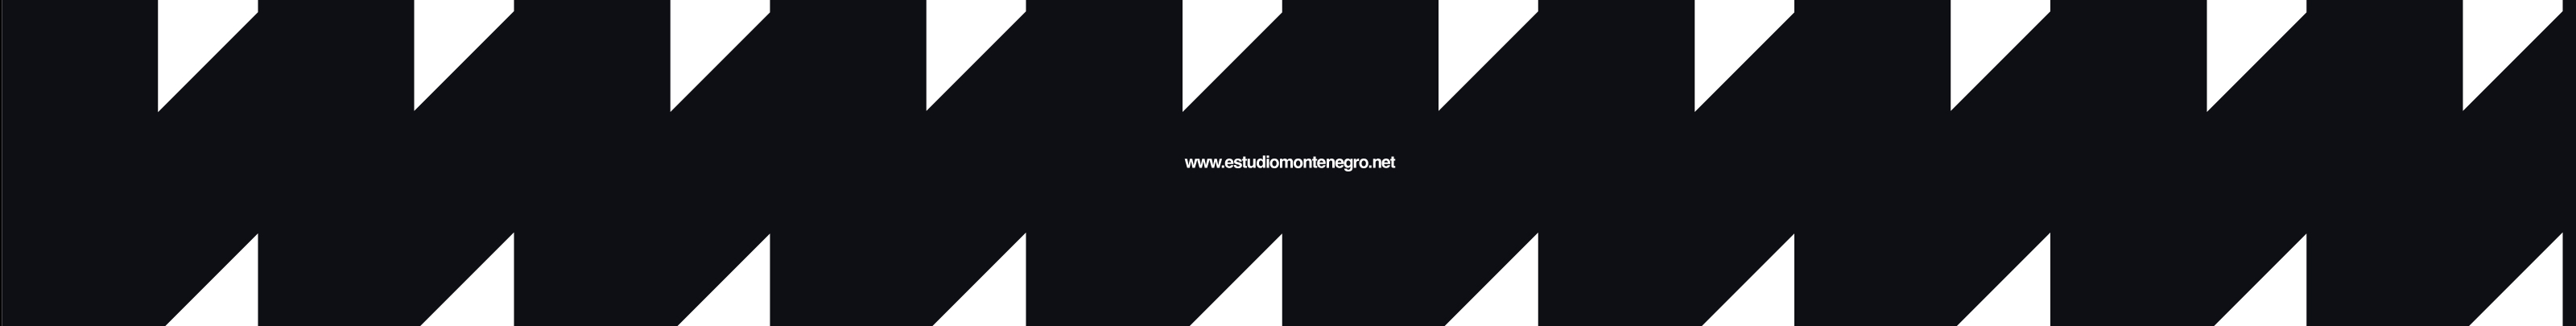 Estudio Montenegro's profile banner